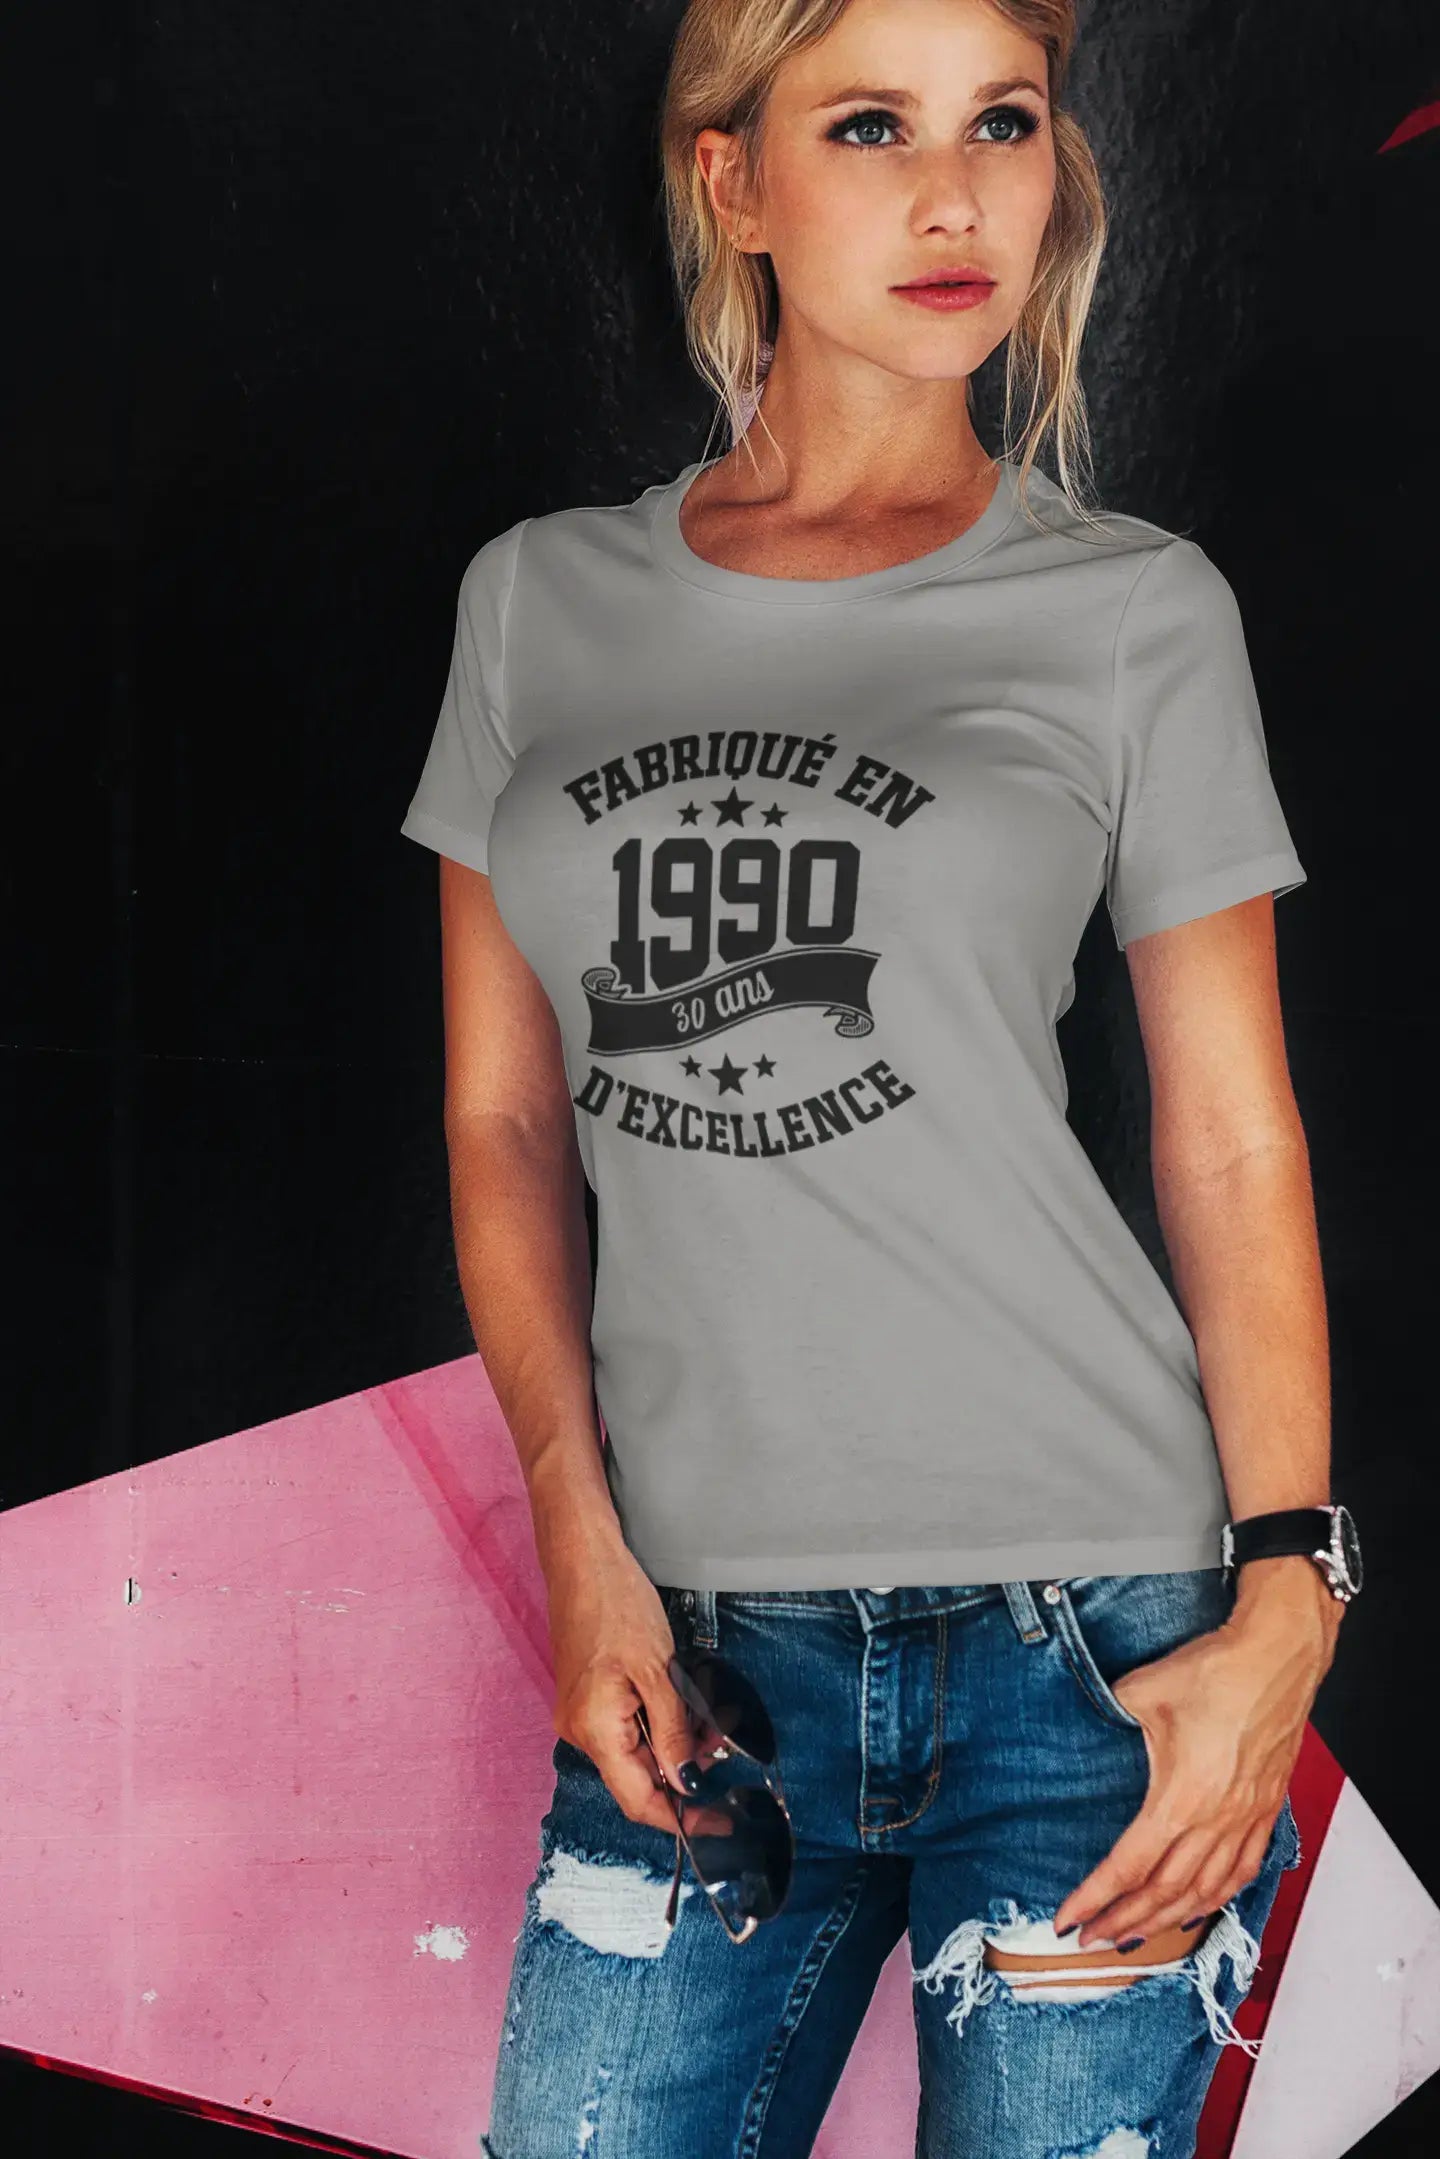 Ultrabasic - Tee-Shirt Femme Manches Courtes Fabriqué en 1990, 30 Ans d'être Génial T-Shirt